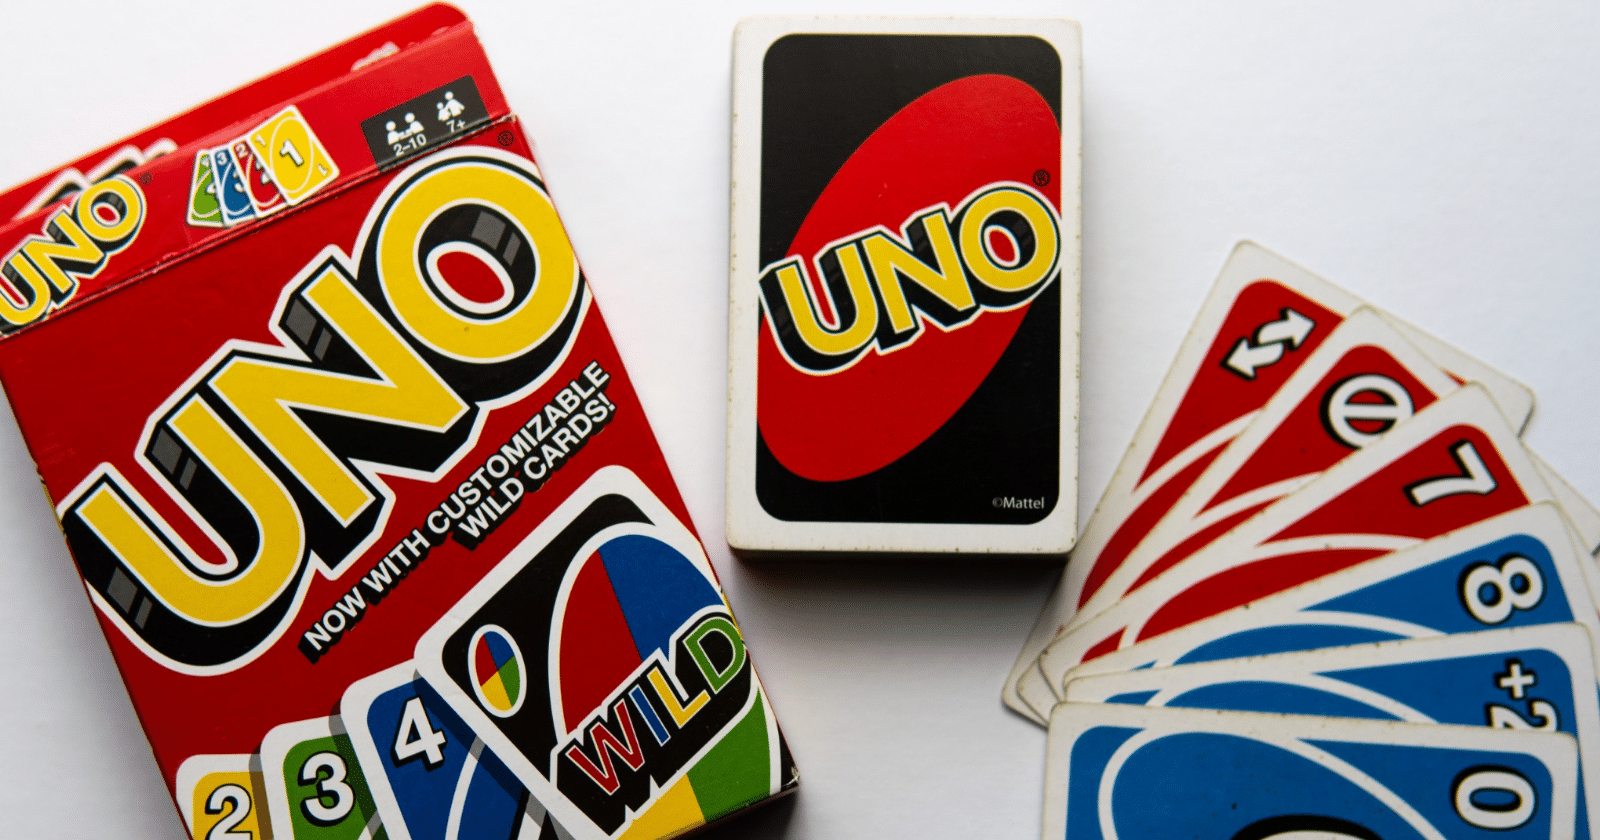 Imagine ganhar R$ 21 mil por semana para jogar Uno? Sim, é